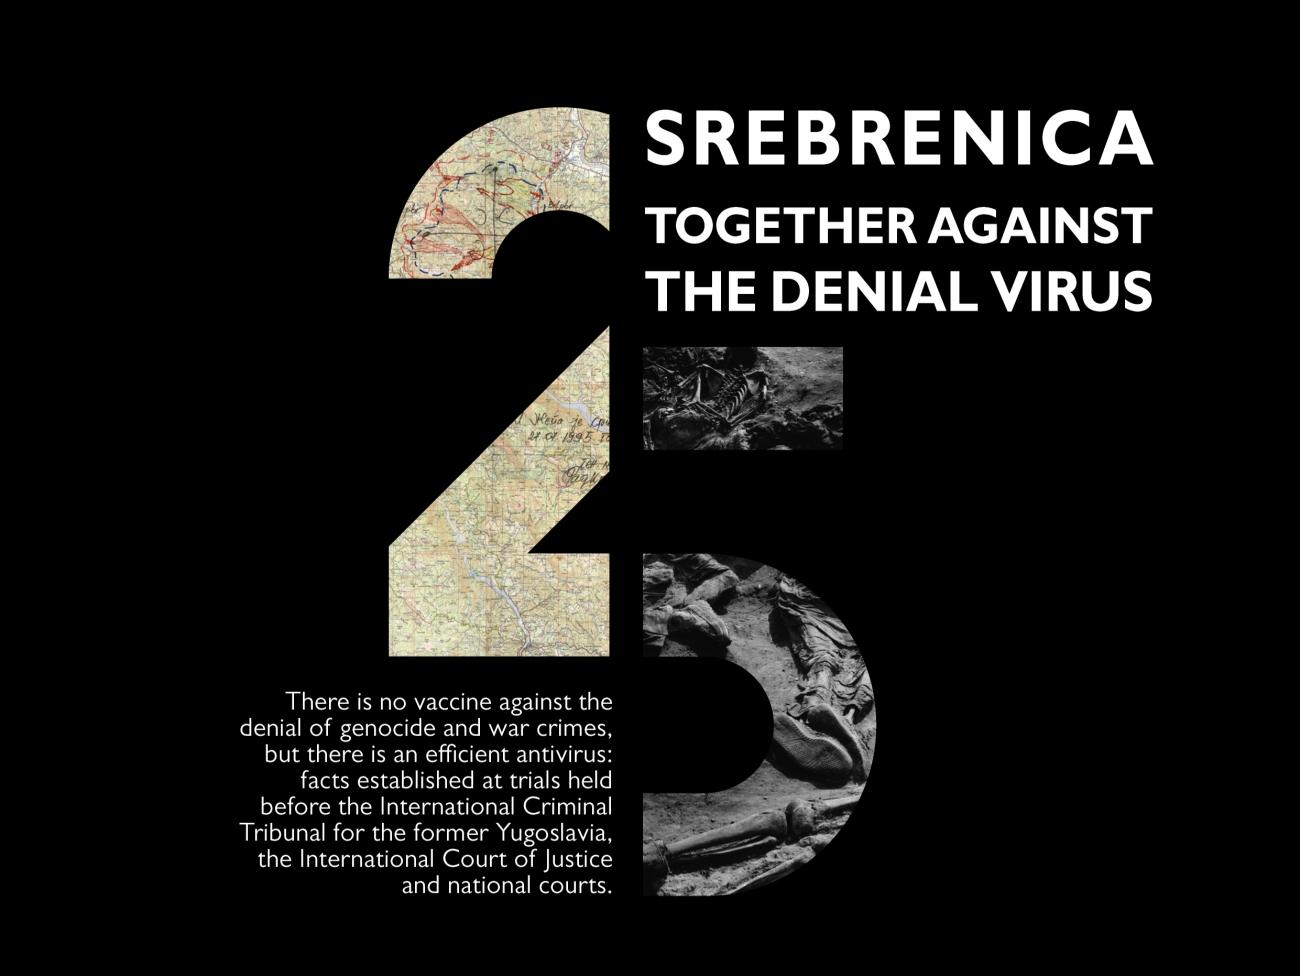 SREBRENICA 25: TOGETHER AGAINST THE DENIAL VIRUS